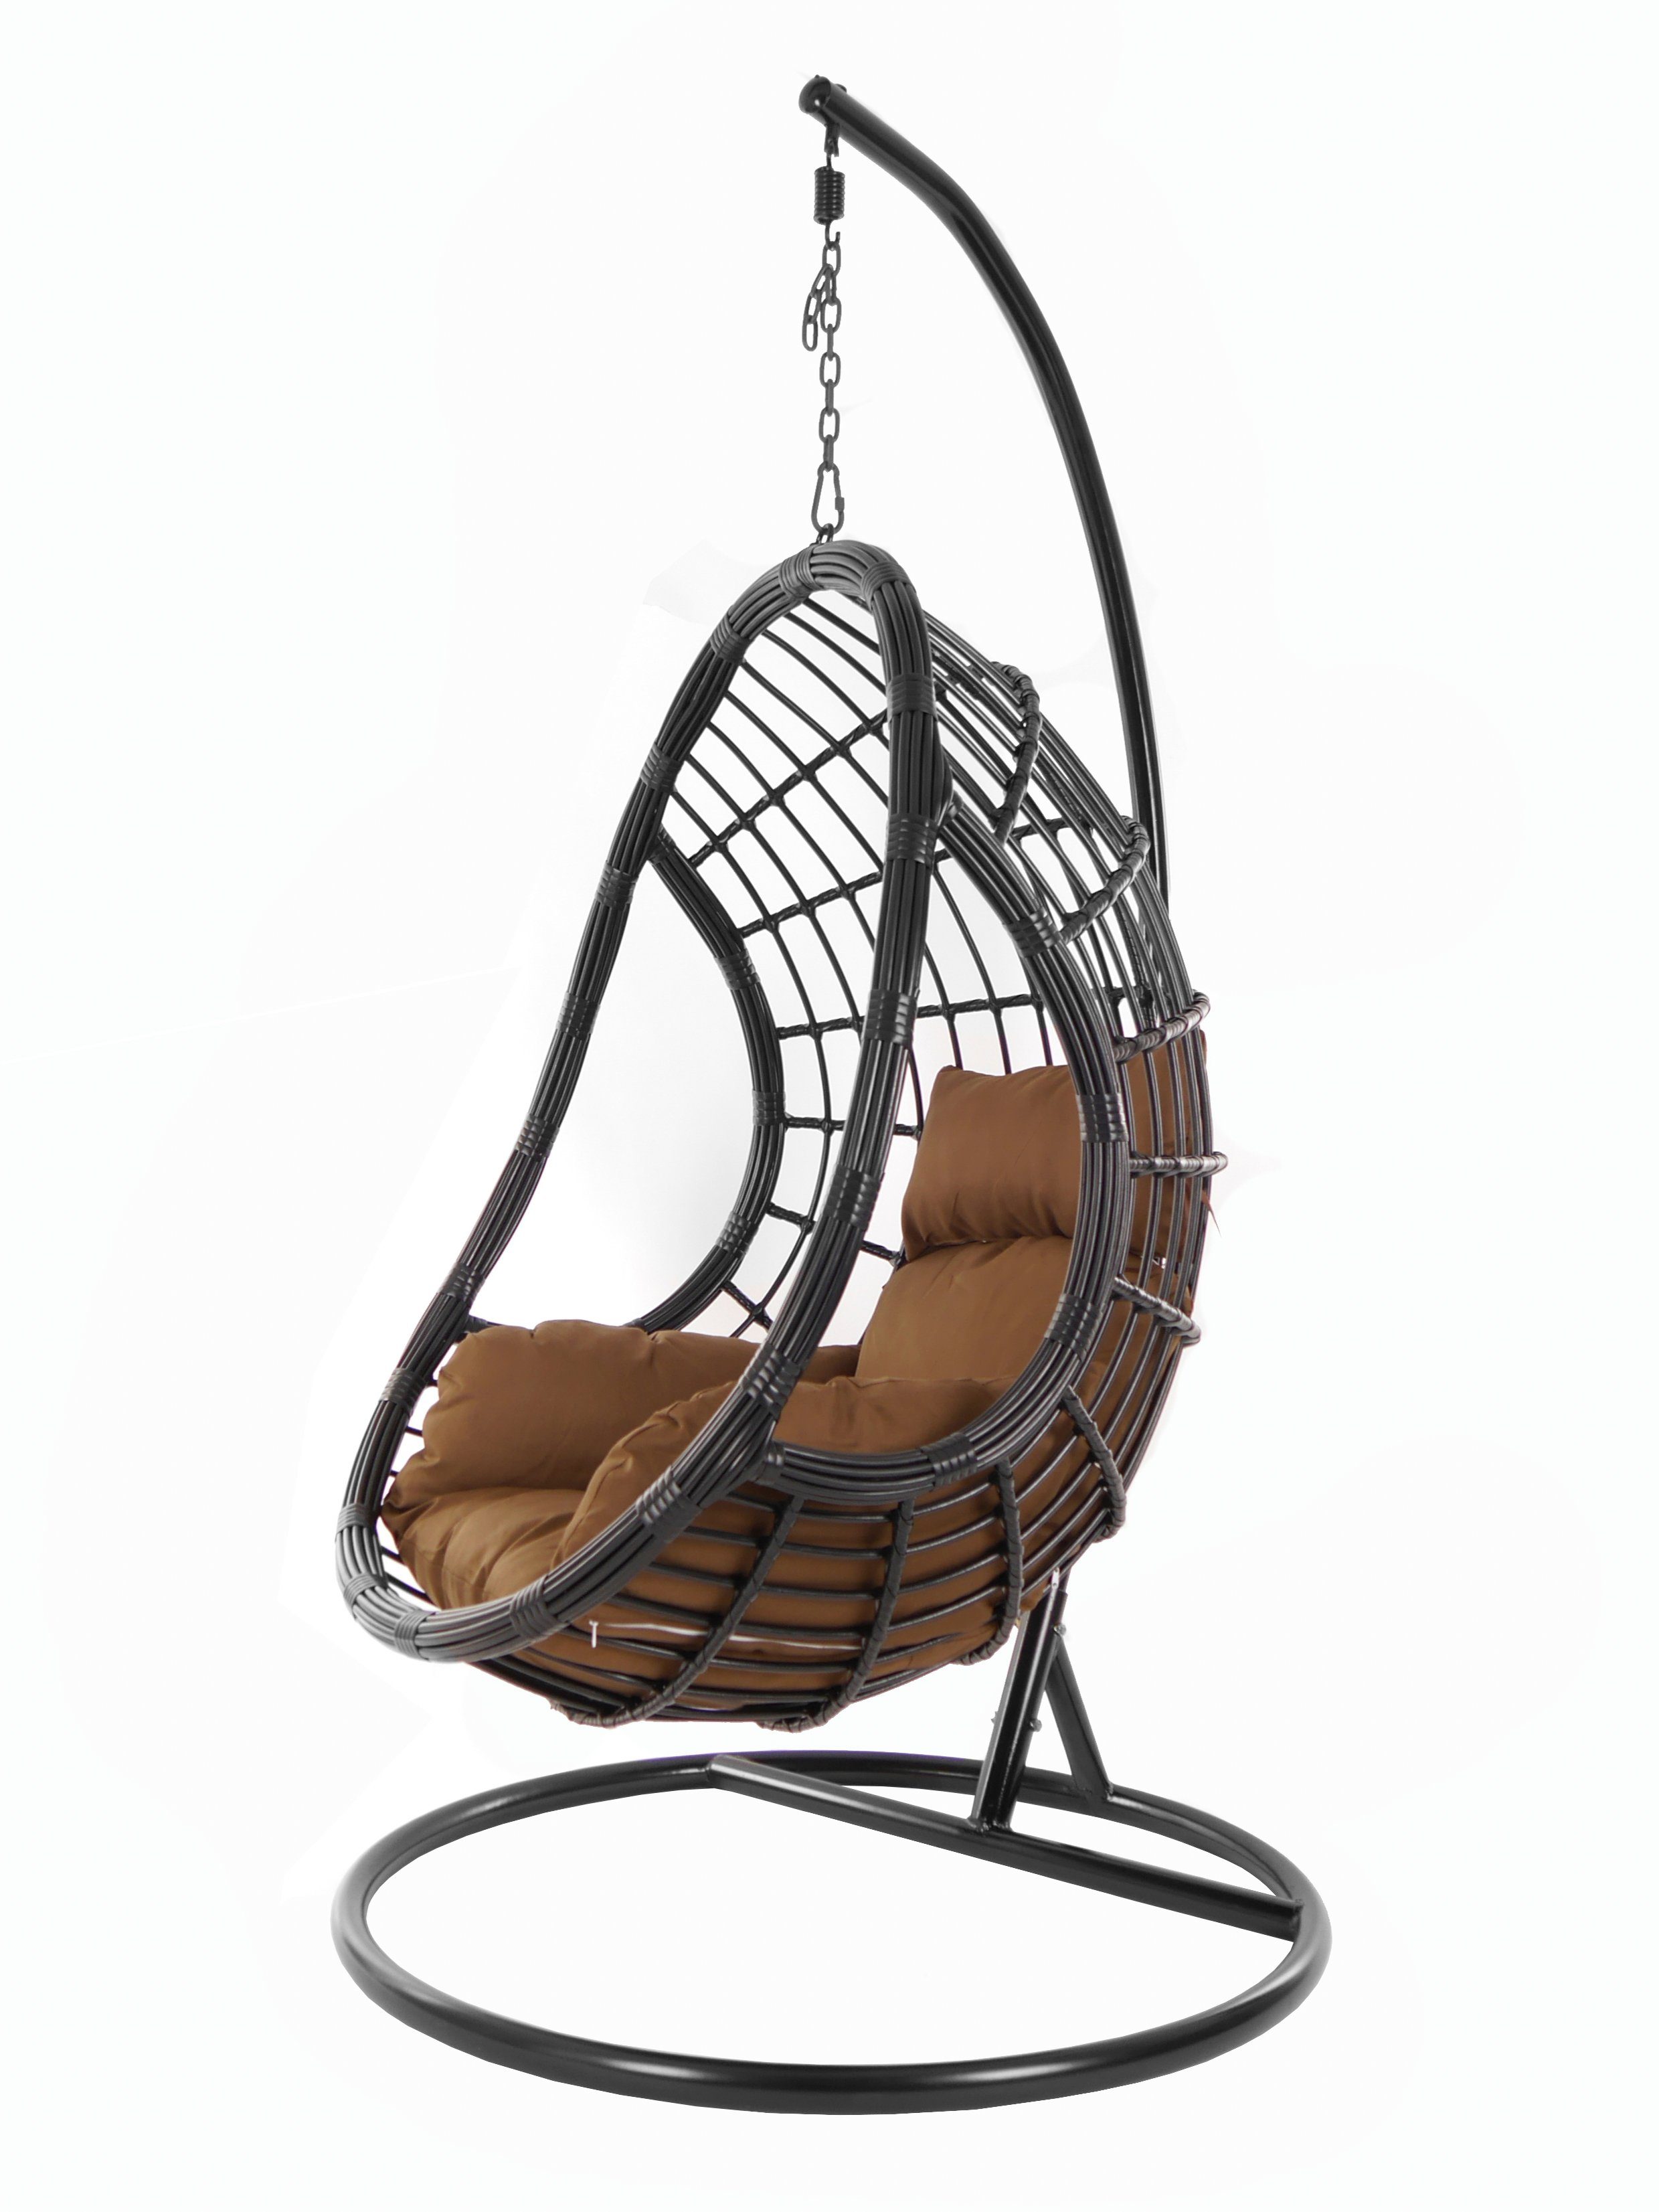 KIDEO Hängesessel PALMANOVA black, Schwebesessel, Swing Chair, Hängesessel  mit Gestell und Kissen, Nest-Kissen